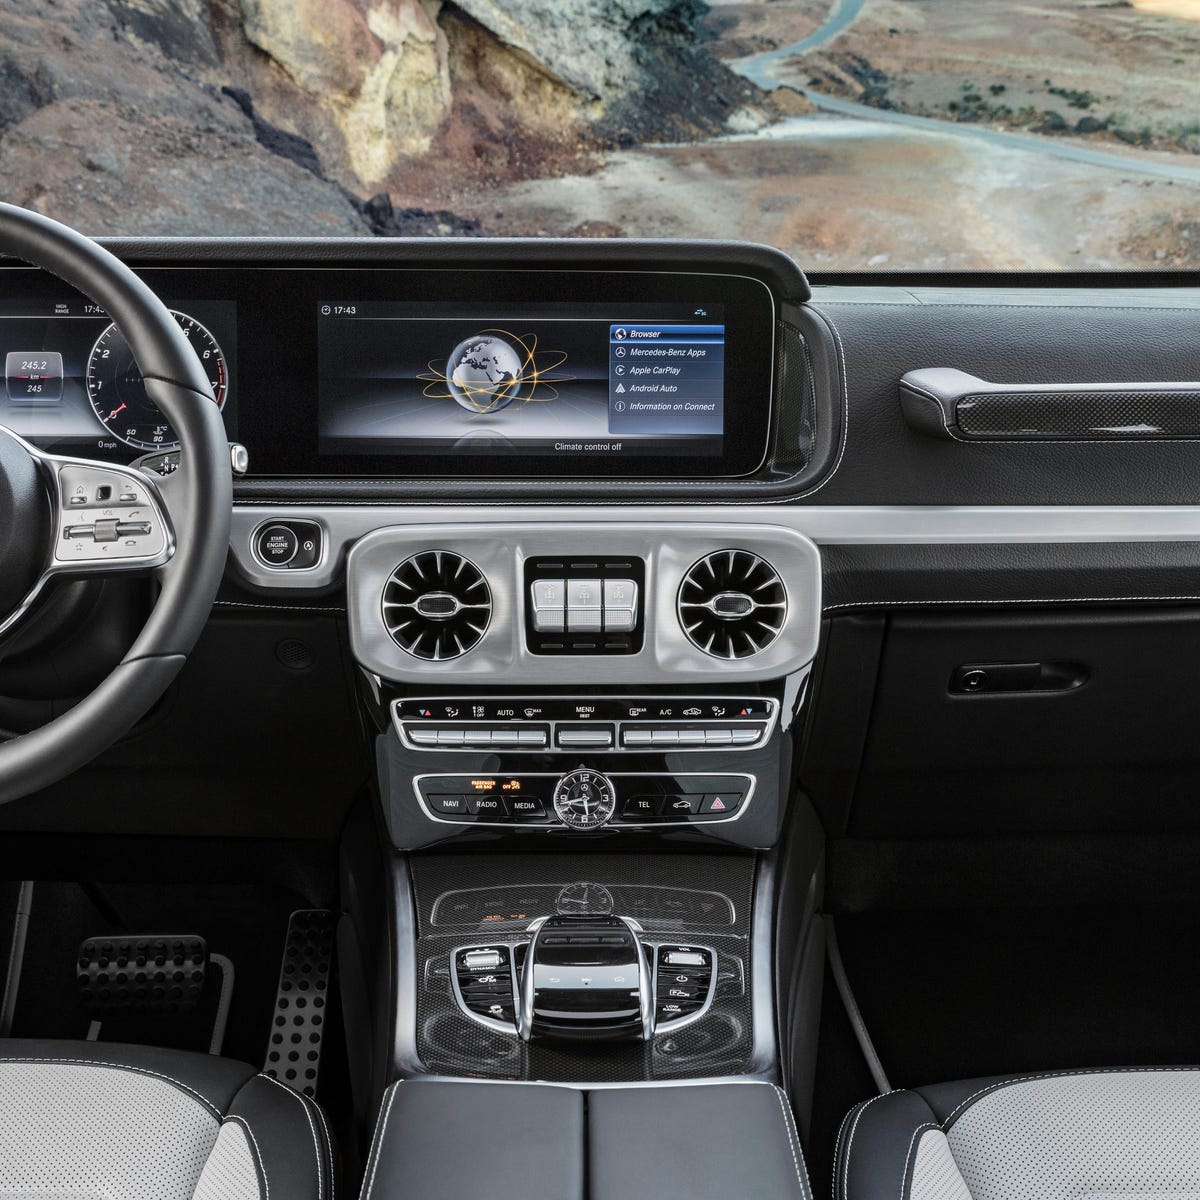 Mercedes-Benz reveals a cushier 2019 G-Class interior - CNET